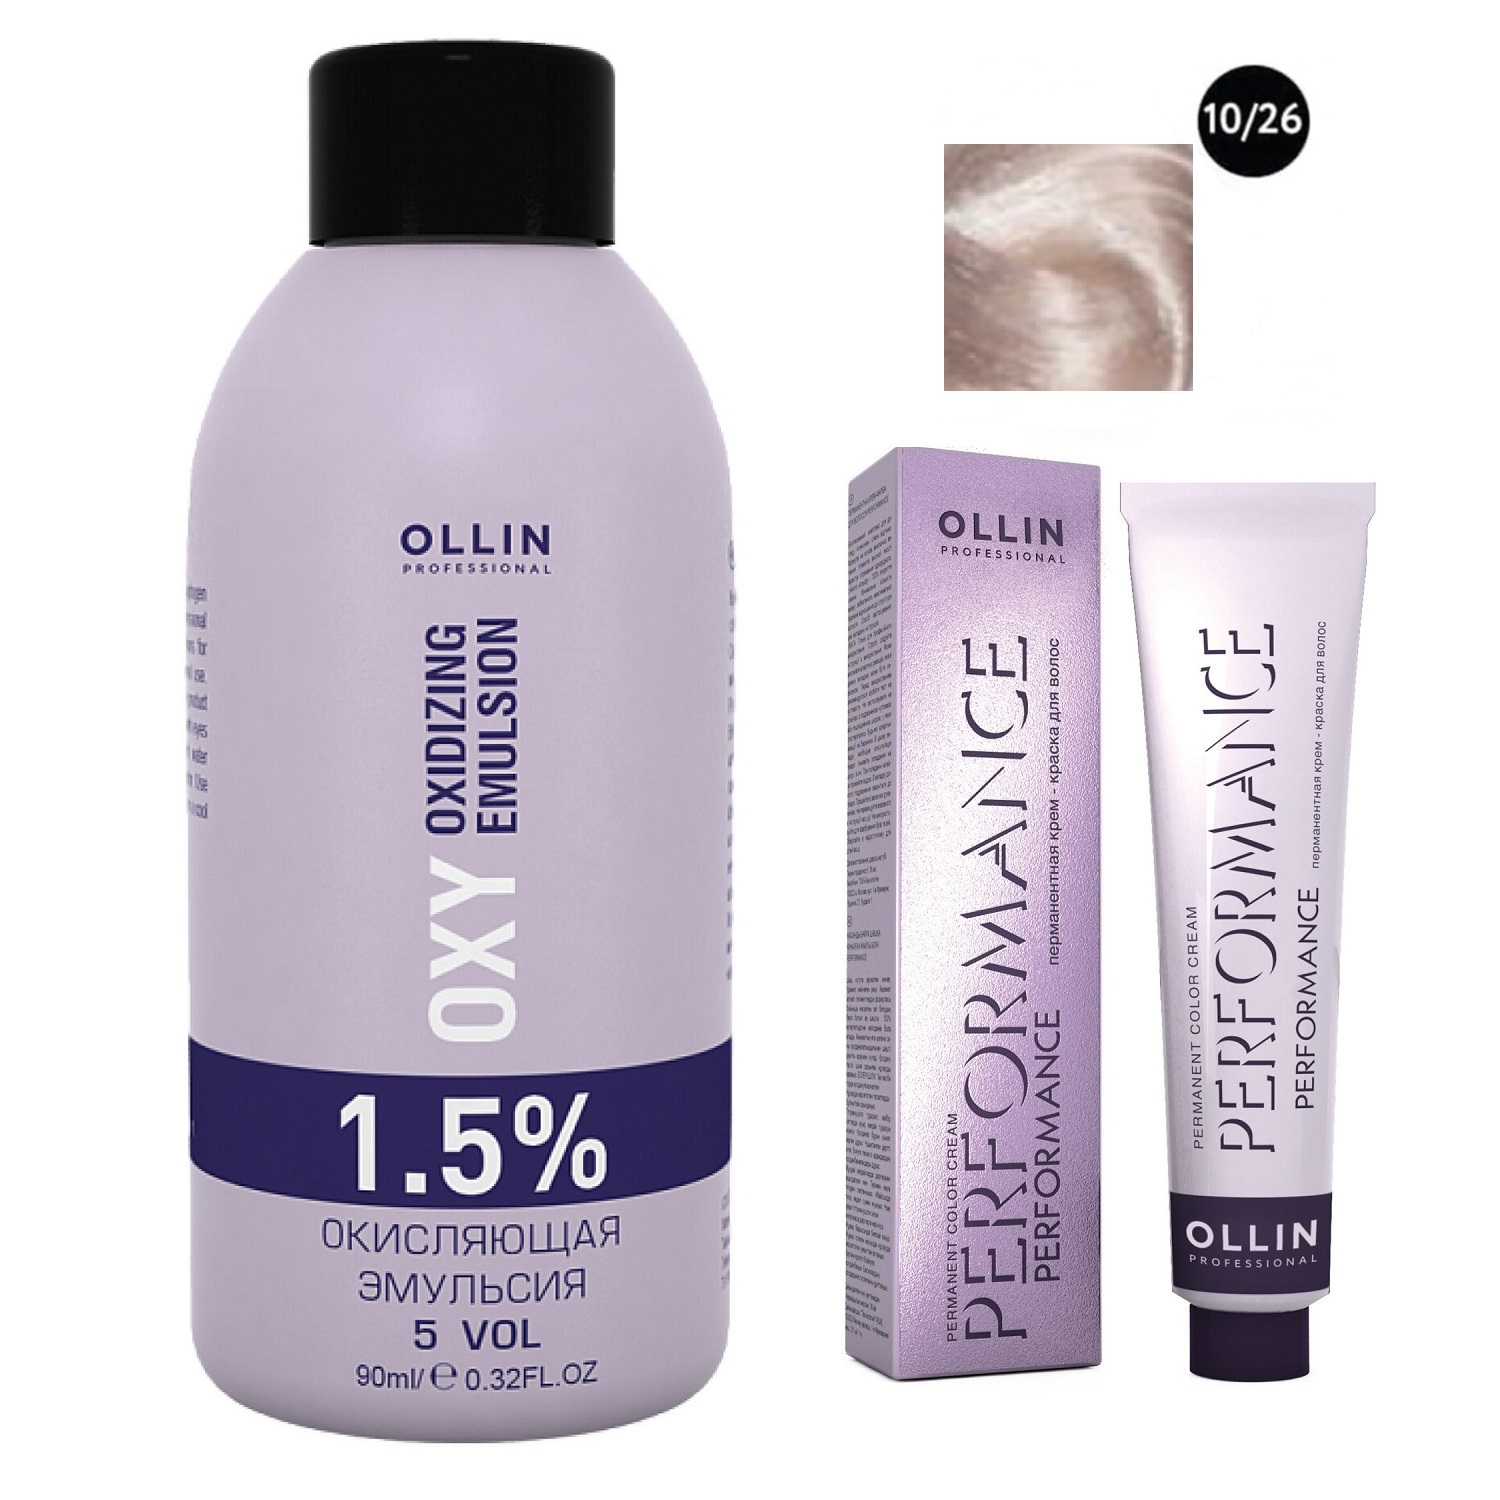 Ollin Professional Набор Перманентная крем-краска для волос Ollin Color оттенок 10/26 светлый блондин розовый 60 мл + Окисляющая эмульсия Oxy 1,5% 90 мл (Ollin Professional, Performance)